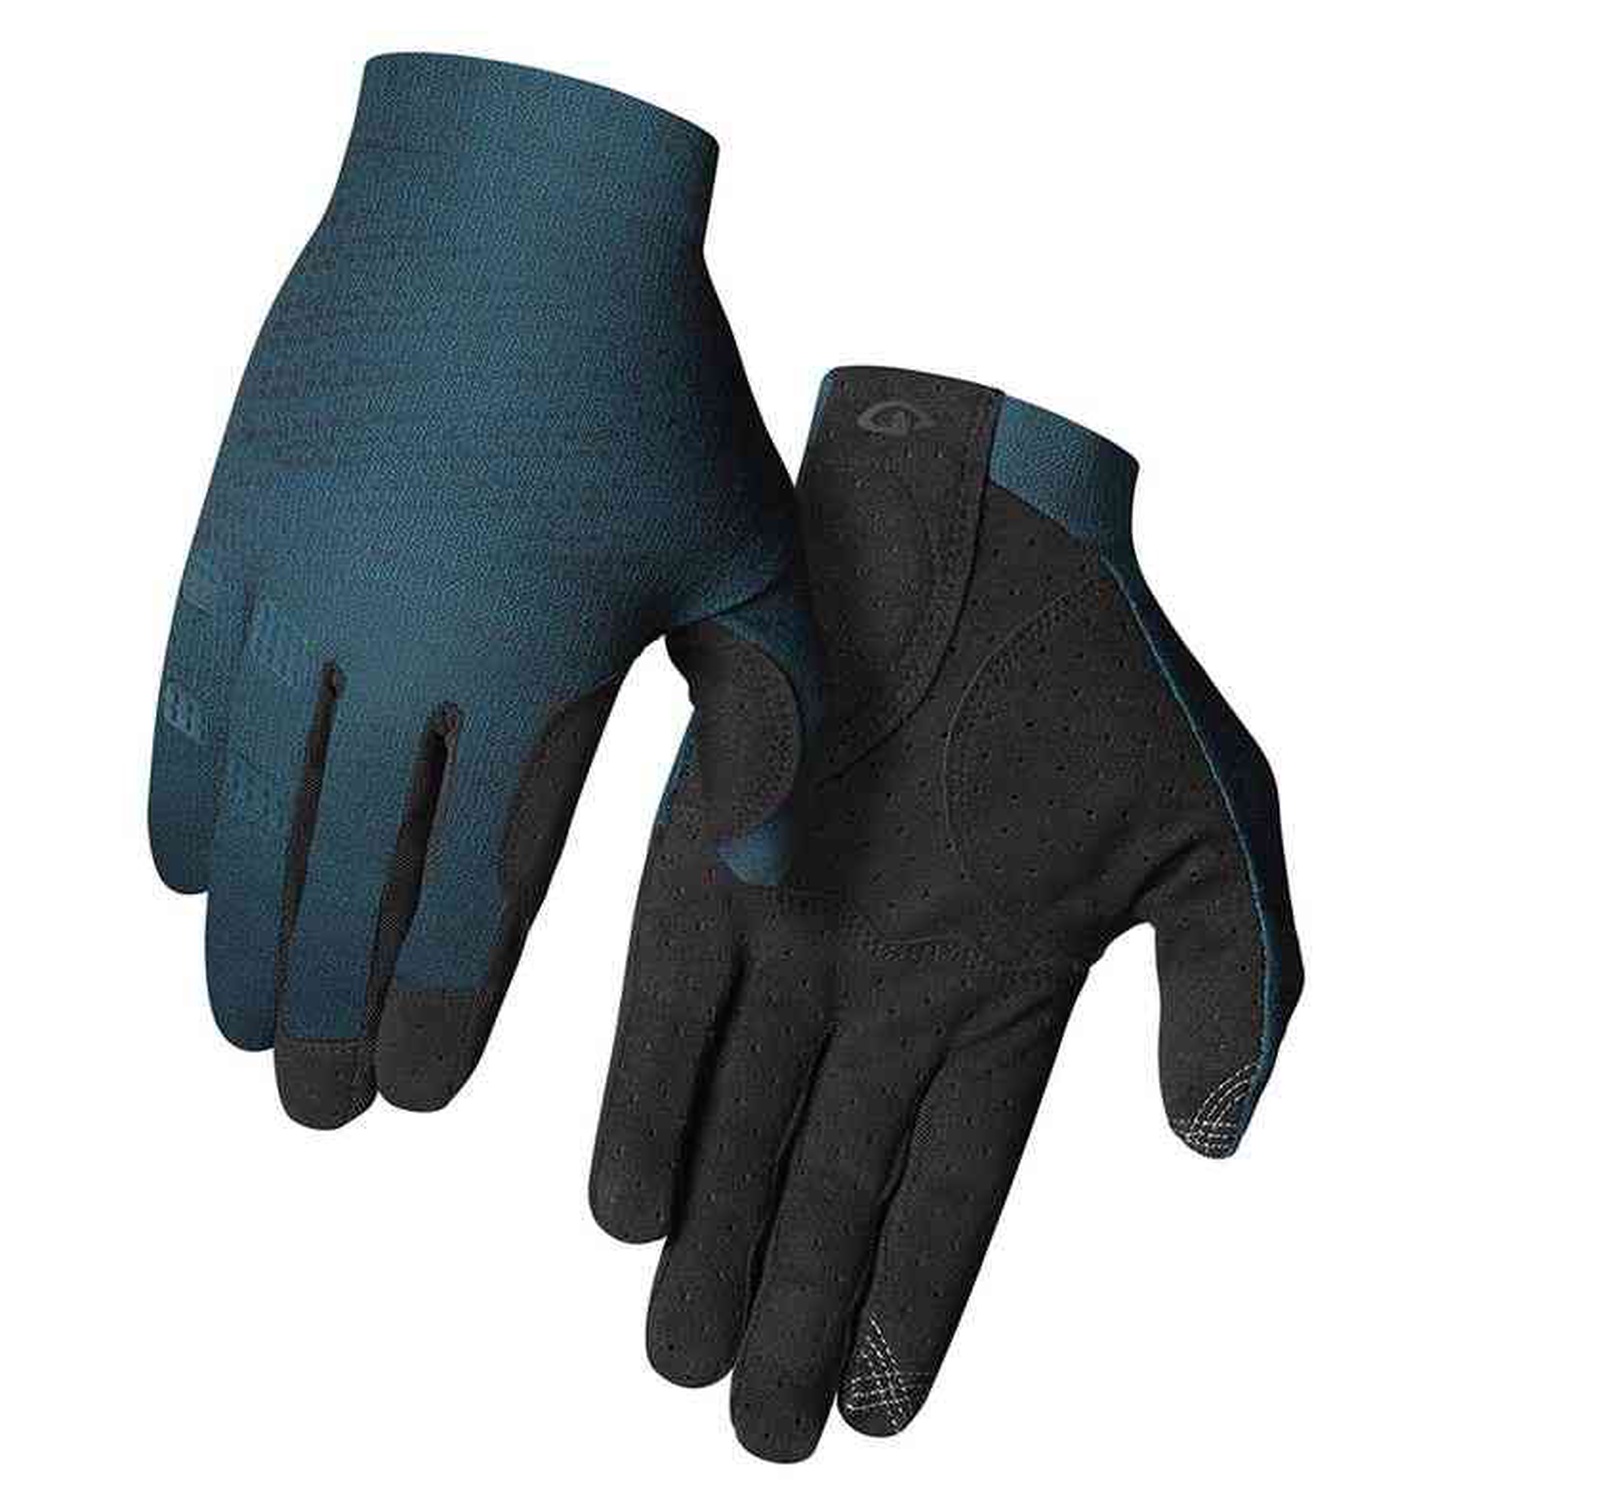 Xnetic Trail Glove